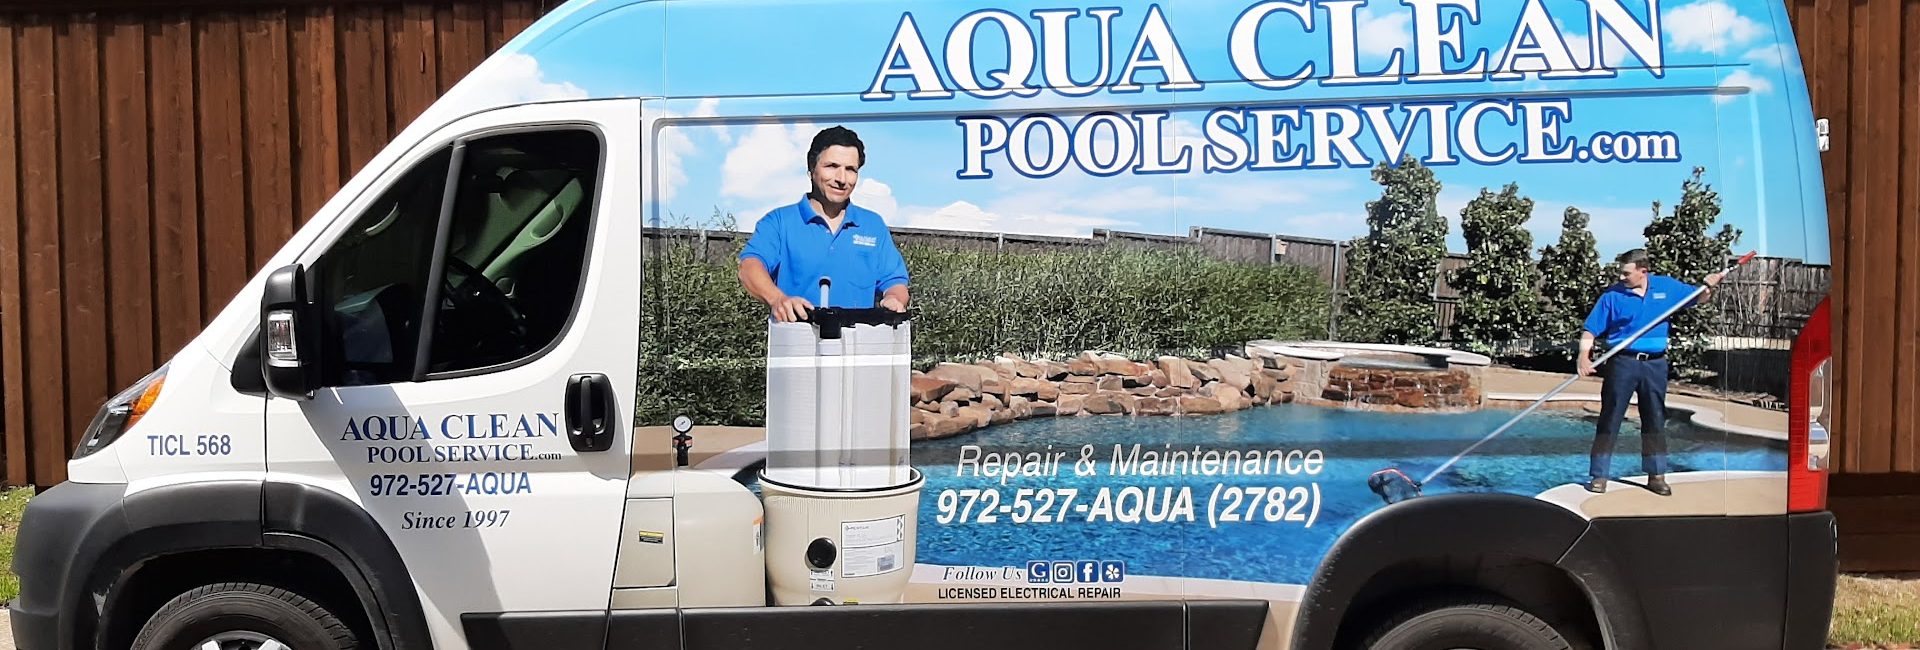 Aqua Clean Pool Service 3